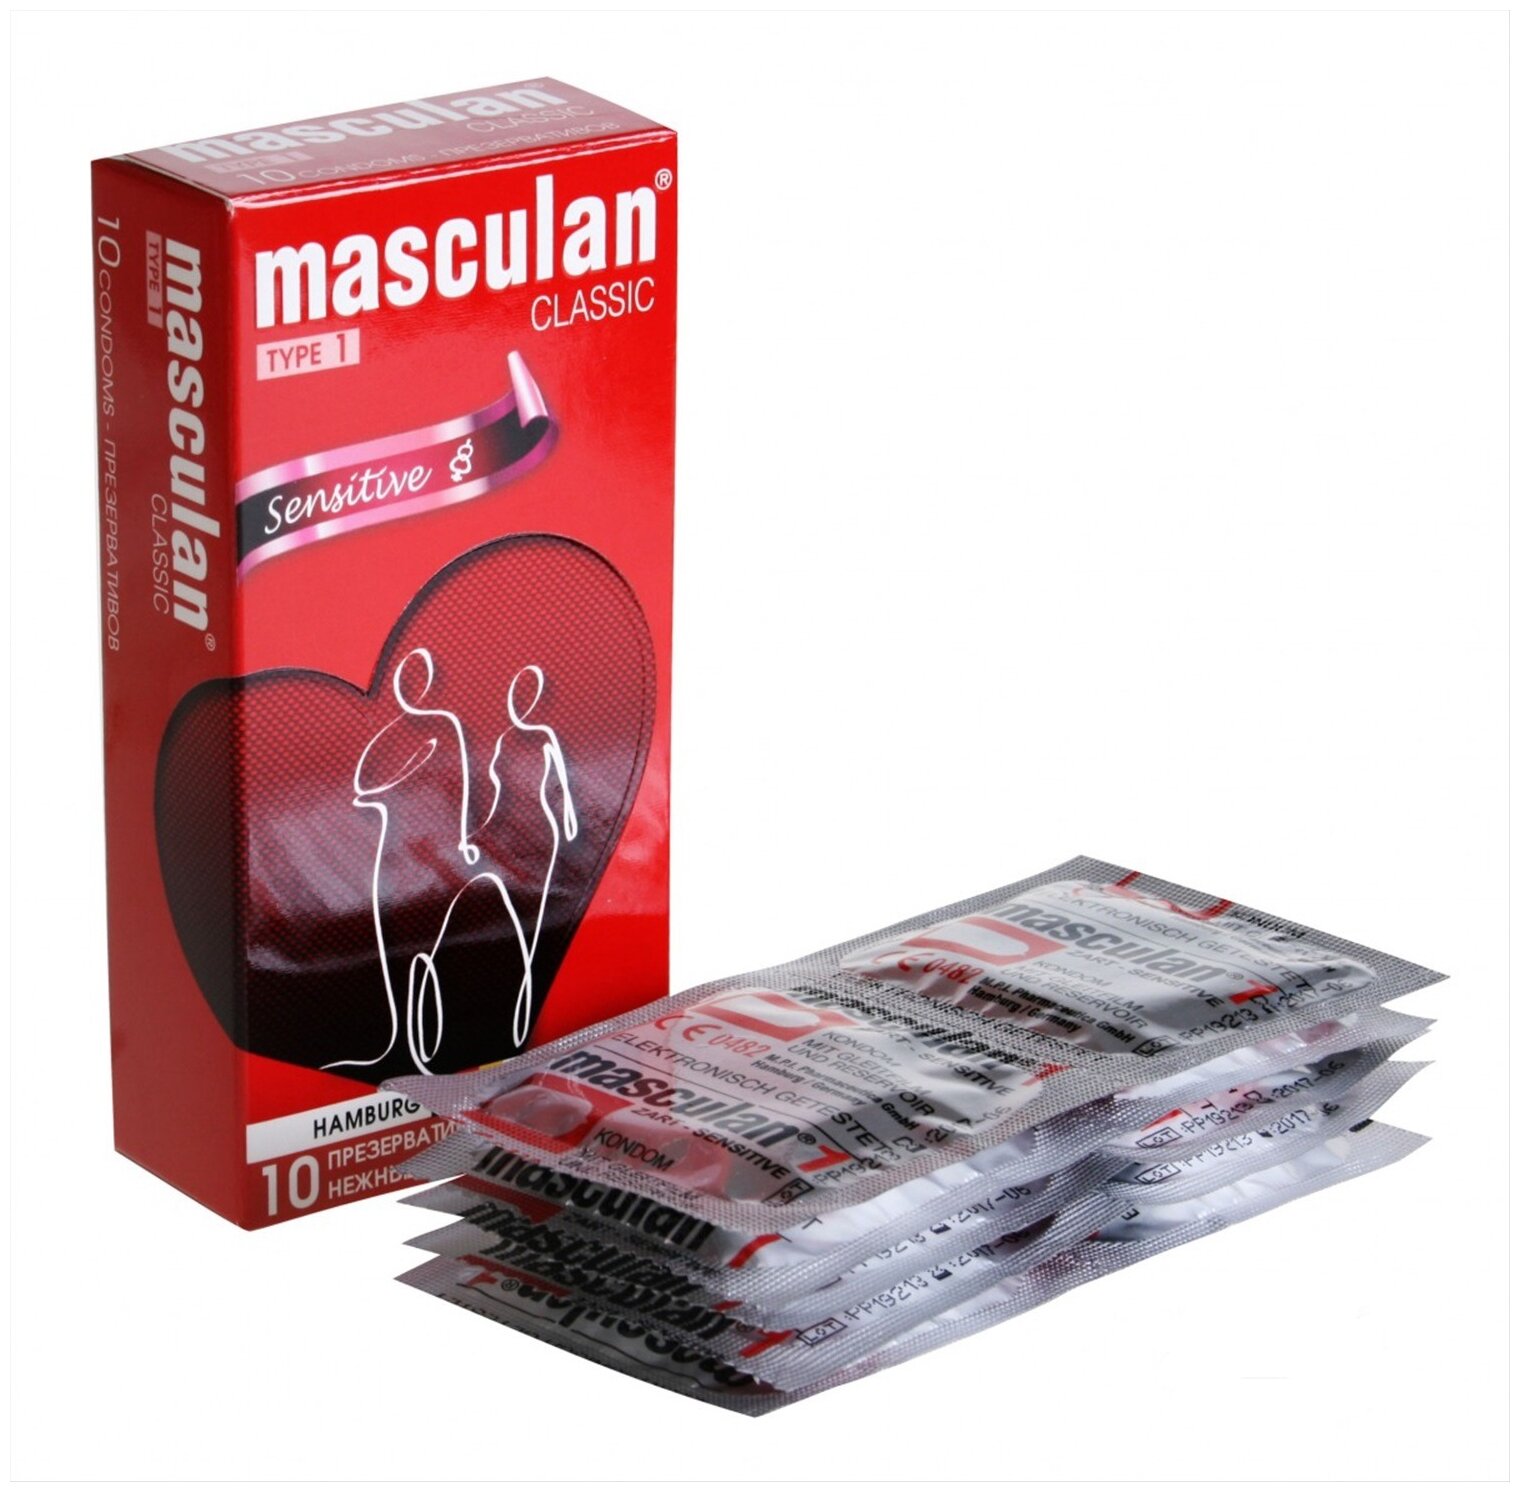 Презервативы Masculan Sensitive plus №10, классические, 10 шт.